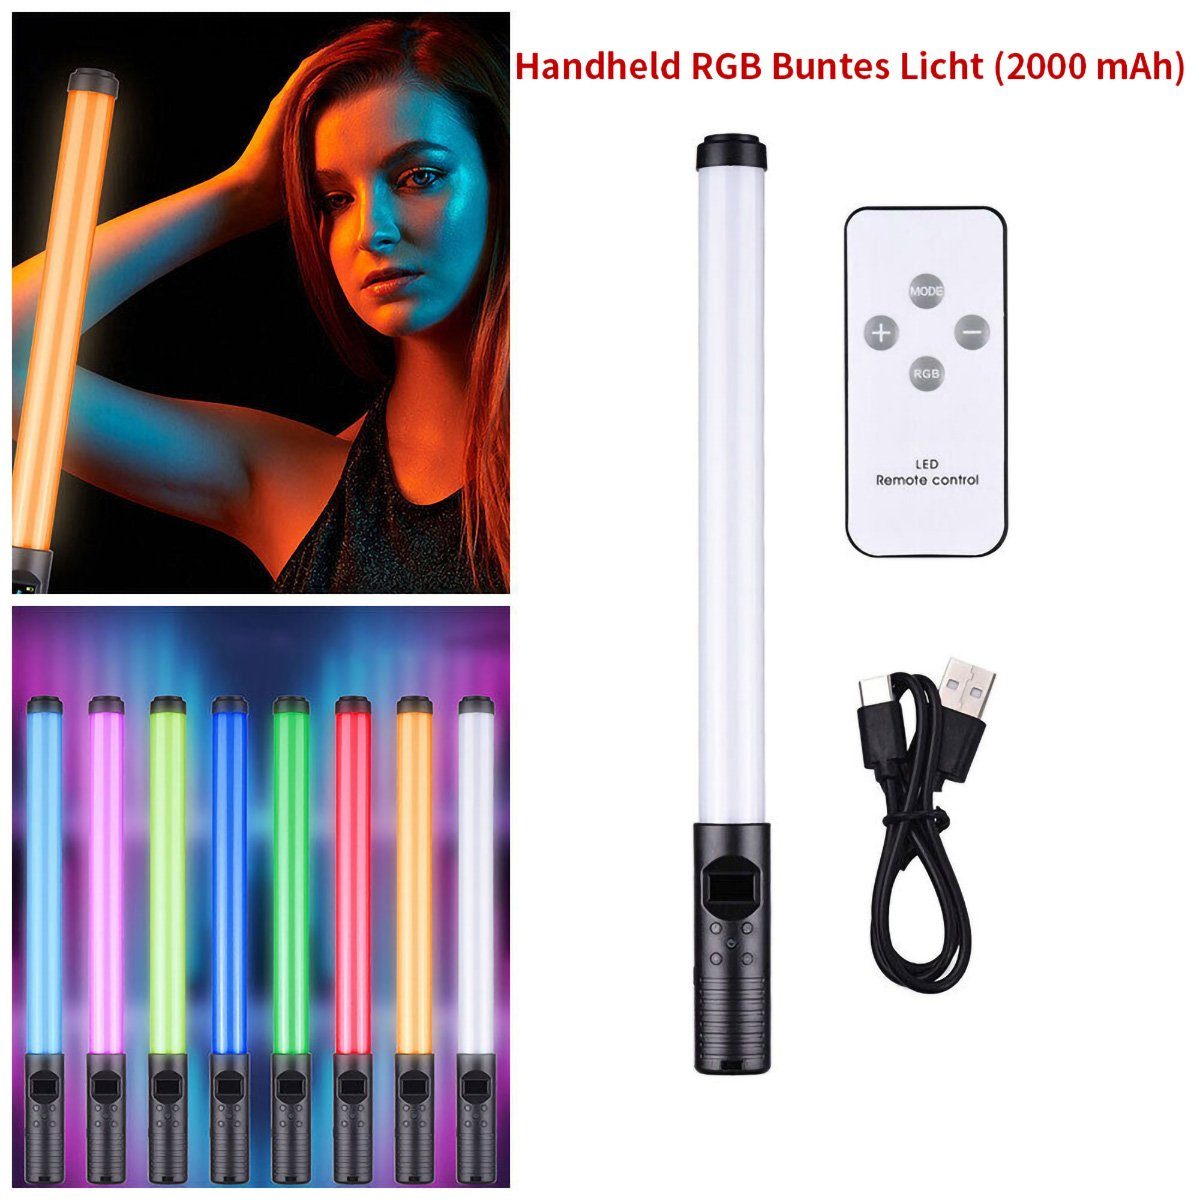 yozhiqu LED Lichtleiste RGB Lichtstab Handheld Fotografie Lampe für Selfie Videoaufnahmen, Tragbarer Fülllichtstab mit zwei Farbtemperaturen und Füllfarbe